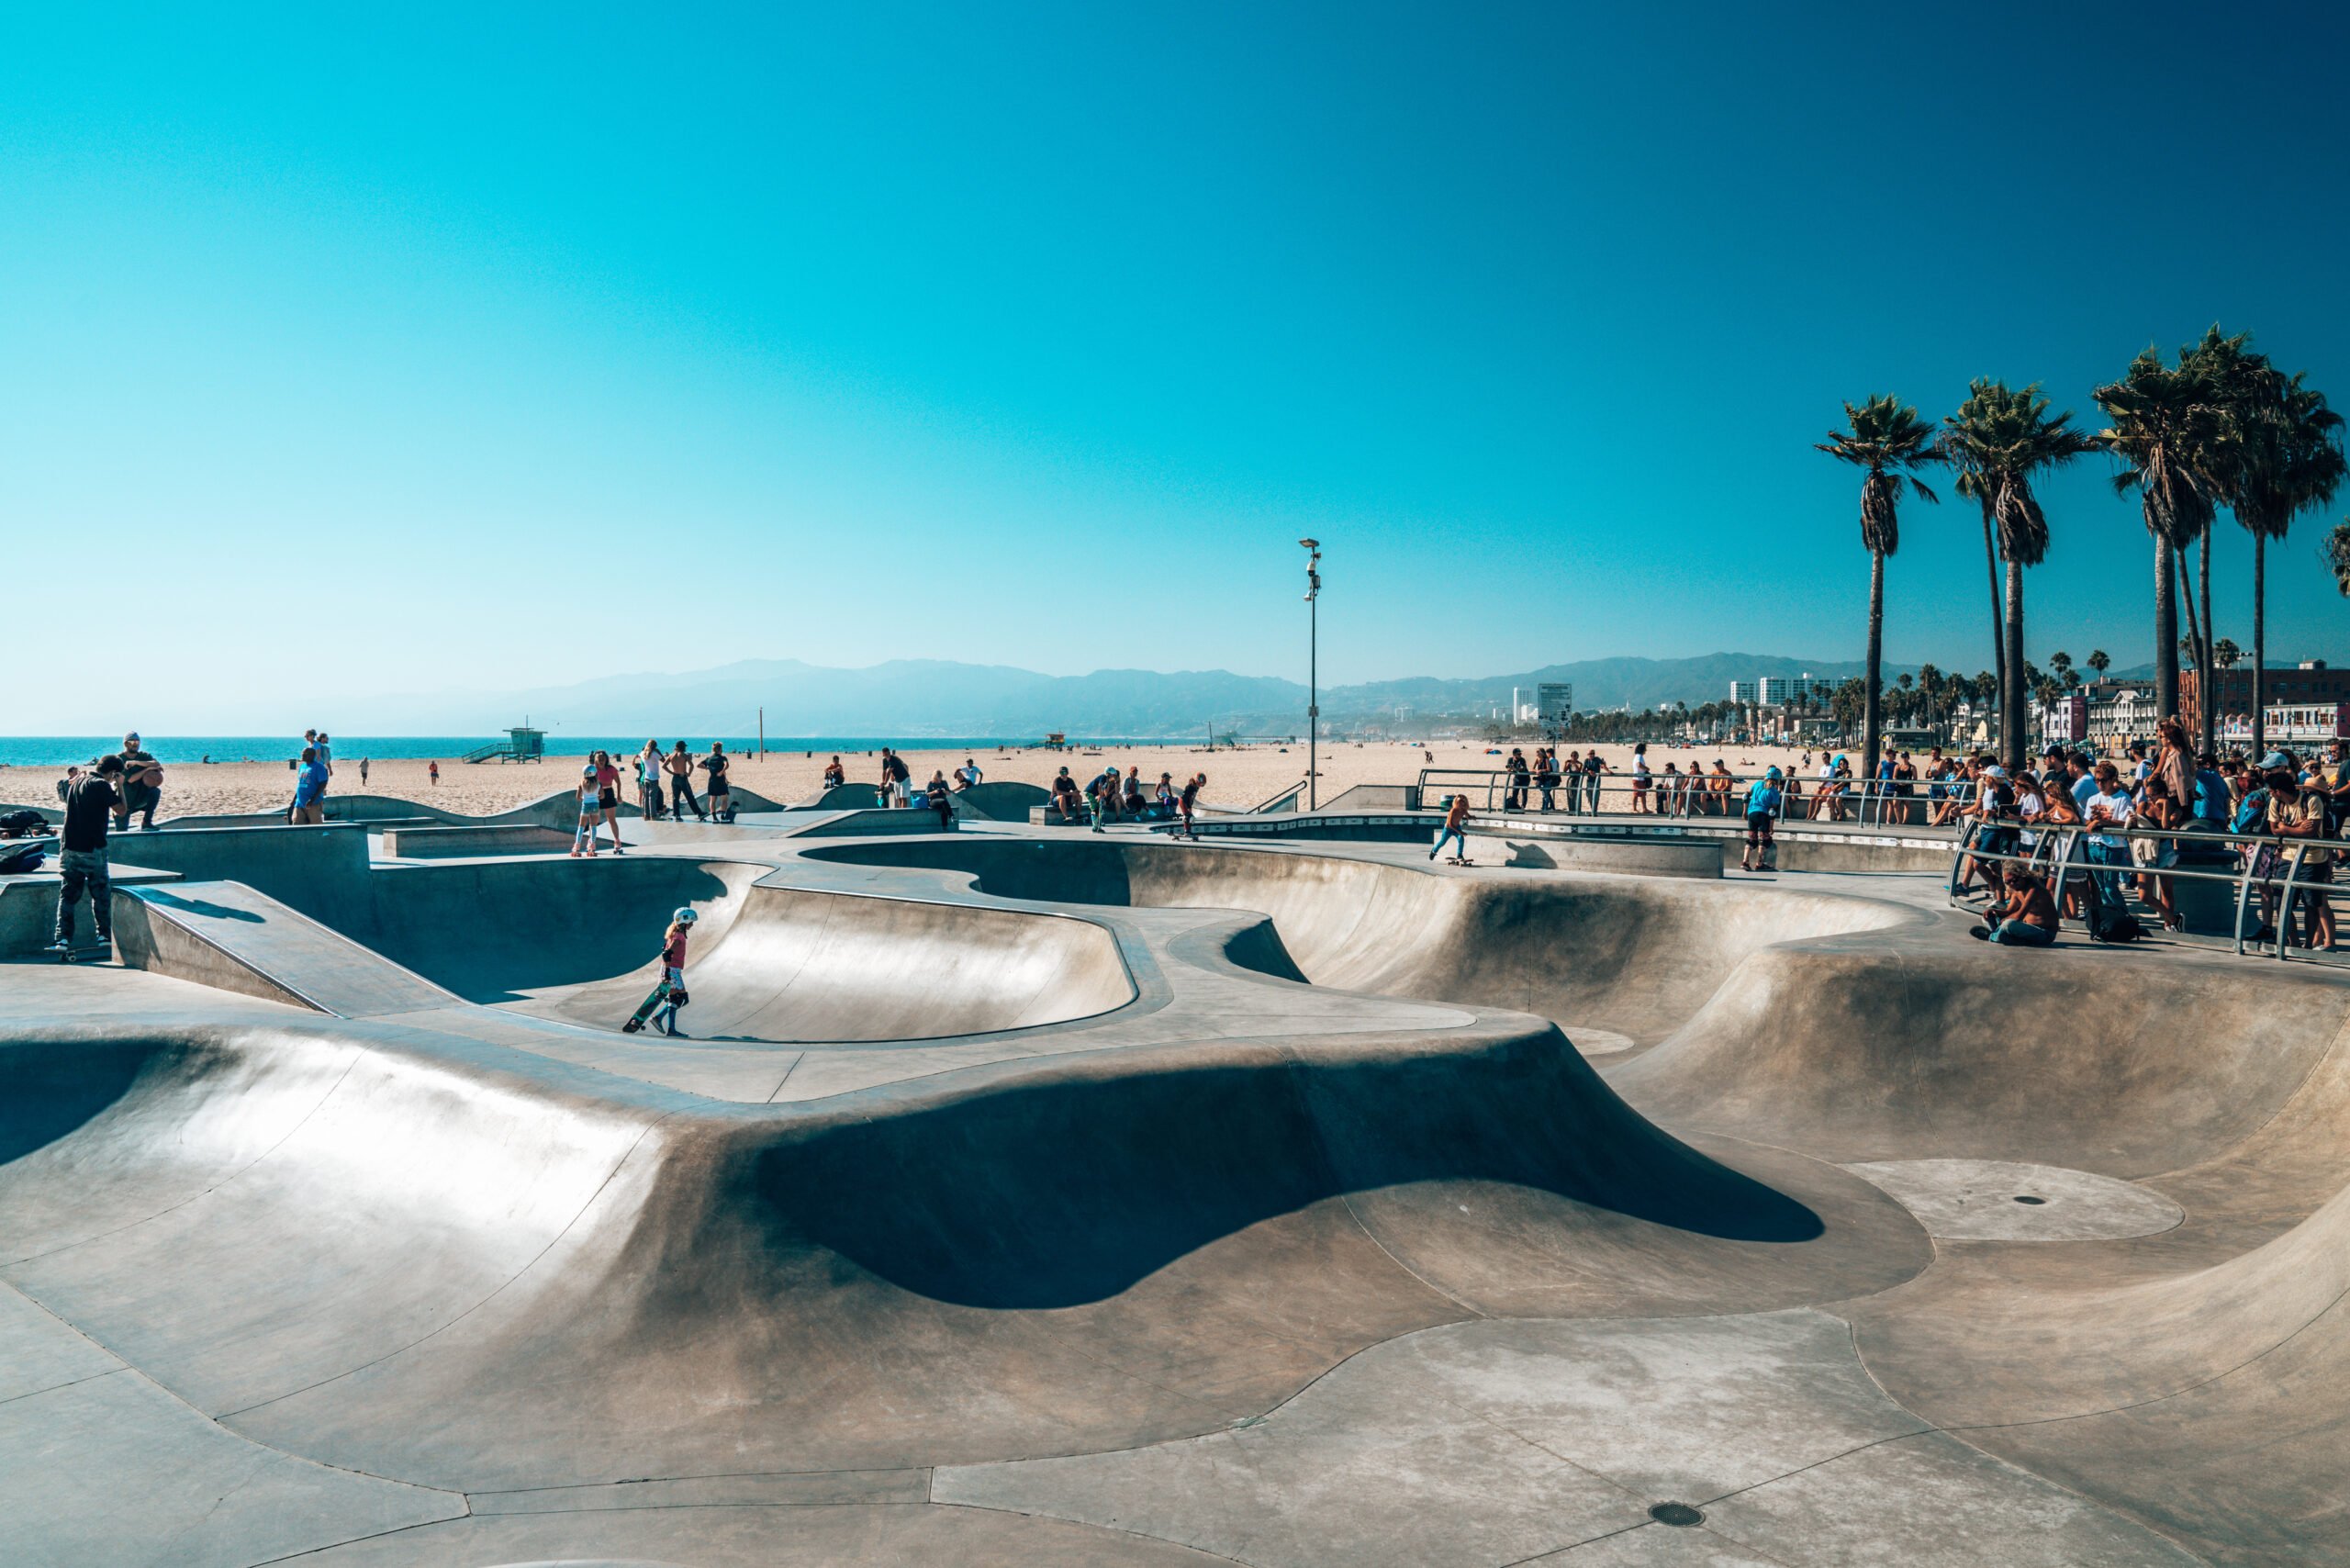 June 10, 2018. Los Angeles, USA. Venice beach skate park by the